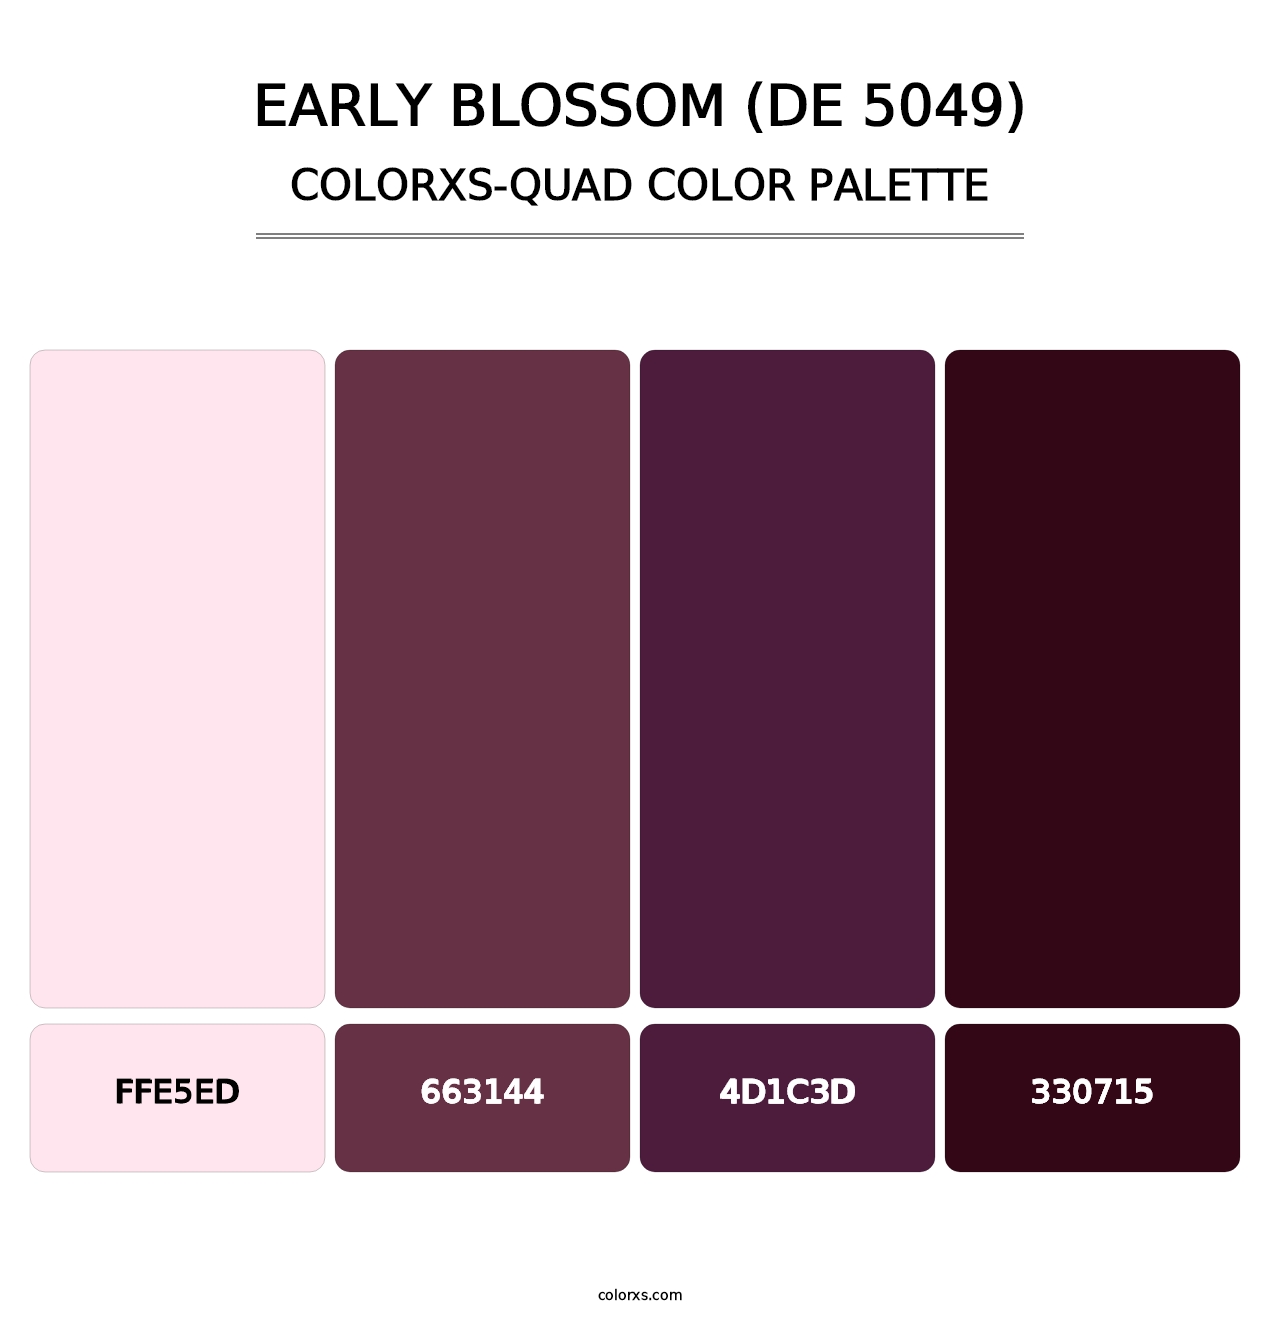 Early Blossom (DE 5049) - Colorxs Quad Palette